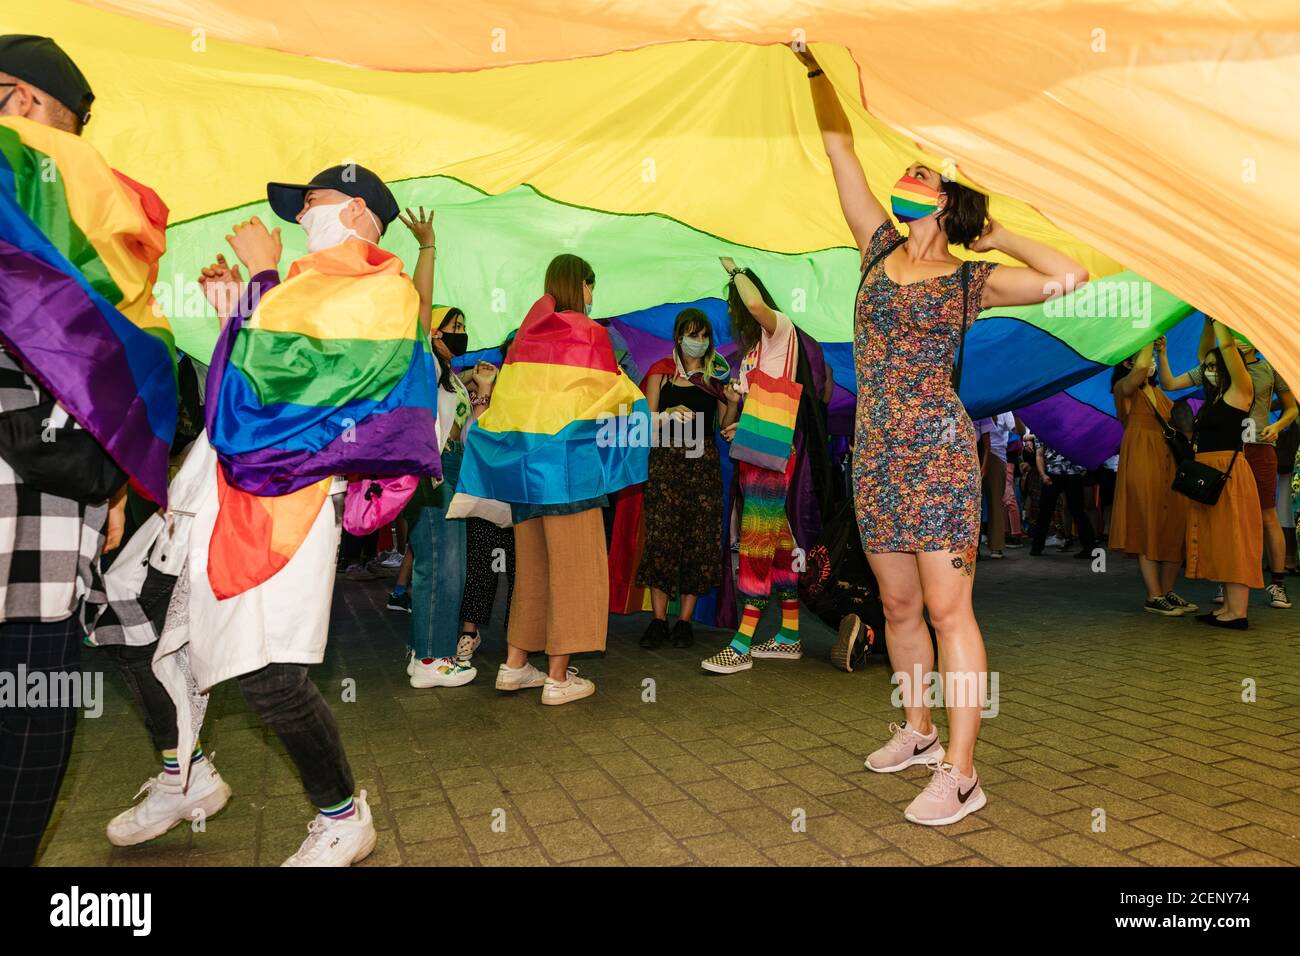 I partecipanti portano con sé una bandiera gigante LGBTQ iridata durante il marzo.la marcia annuale di uguaglianza, conosciuta anche come Pride Parade, ha attratto un numero particolarmente elevato di partecipanti, nonché due contromunazioni. In Polonia, recentemente si è svolto un acceso dibattito pubblico tra sostenitori della tolleranza, con una visione di centro o di sinistra, e circoli conservatori, nazionalisti e cattolici di destra, che stanno esprimendo la loro avversione alla comunità LGBT in modo sempre più spietato. Gli oppositori della comunità LGBT lo accusano di cercare di realizzare una rivoluzione morale. Quelli a favore del tole Foto Stock